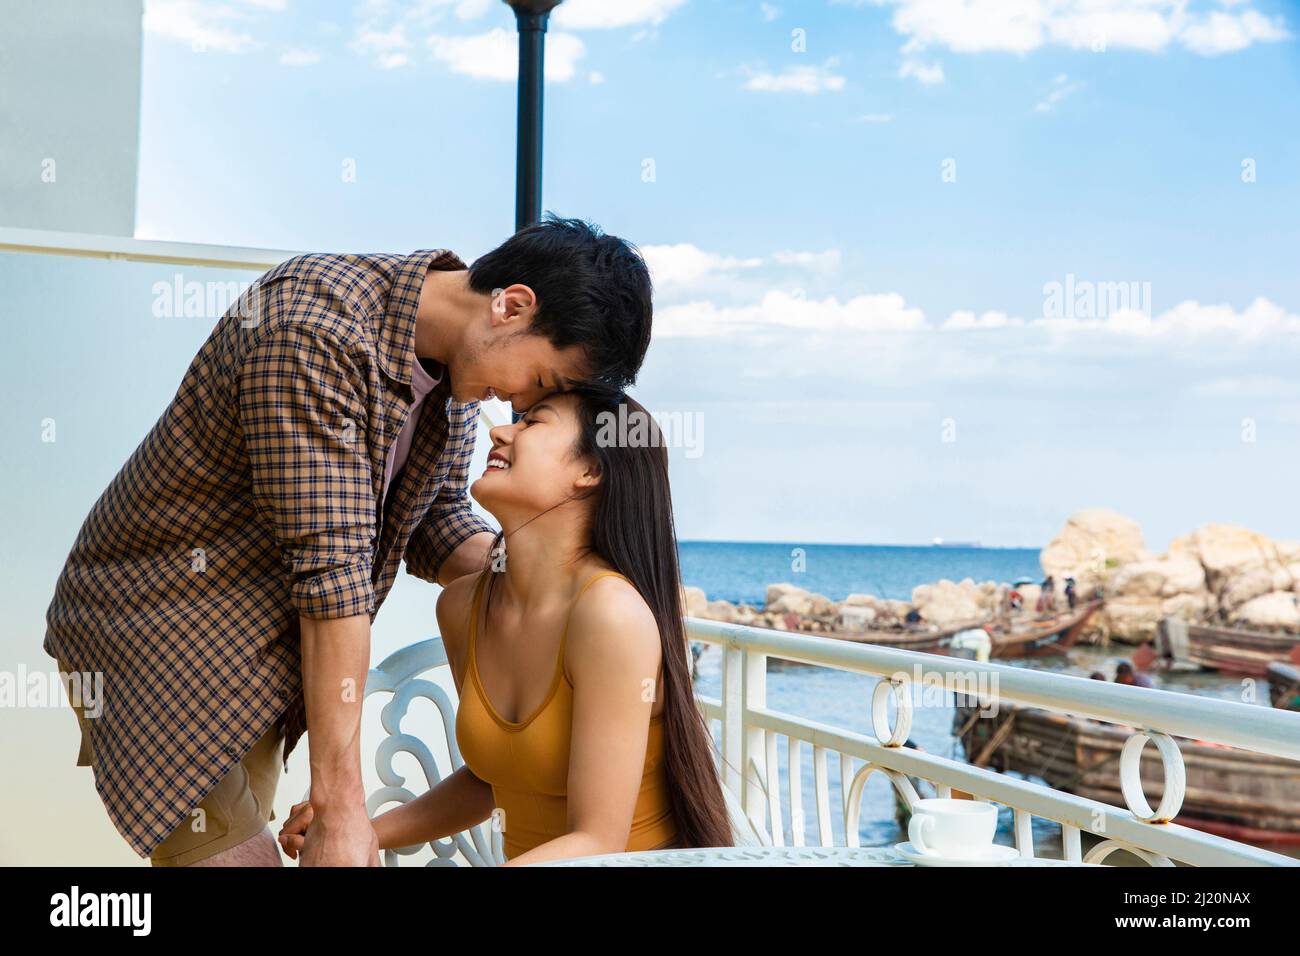 Gli amanti che si sono innamorati del balcone di un hotel sul mare - foto di scorta Foto Stock